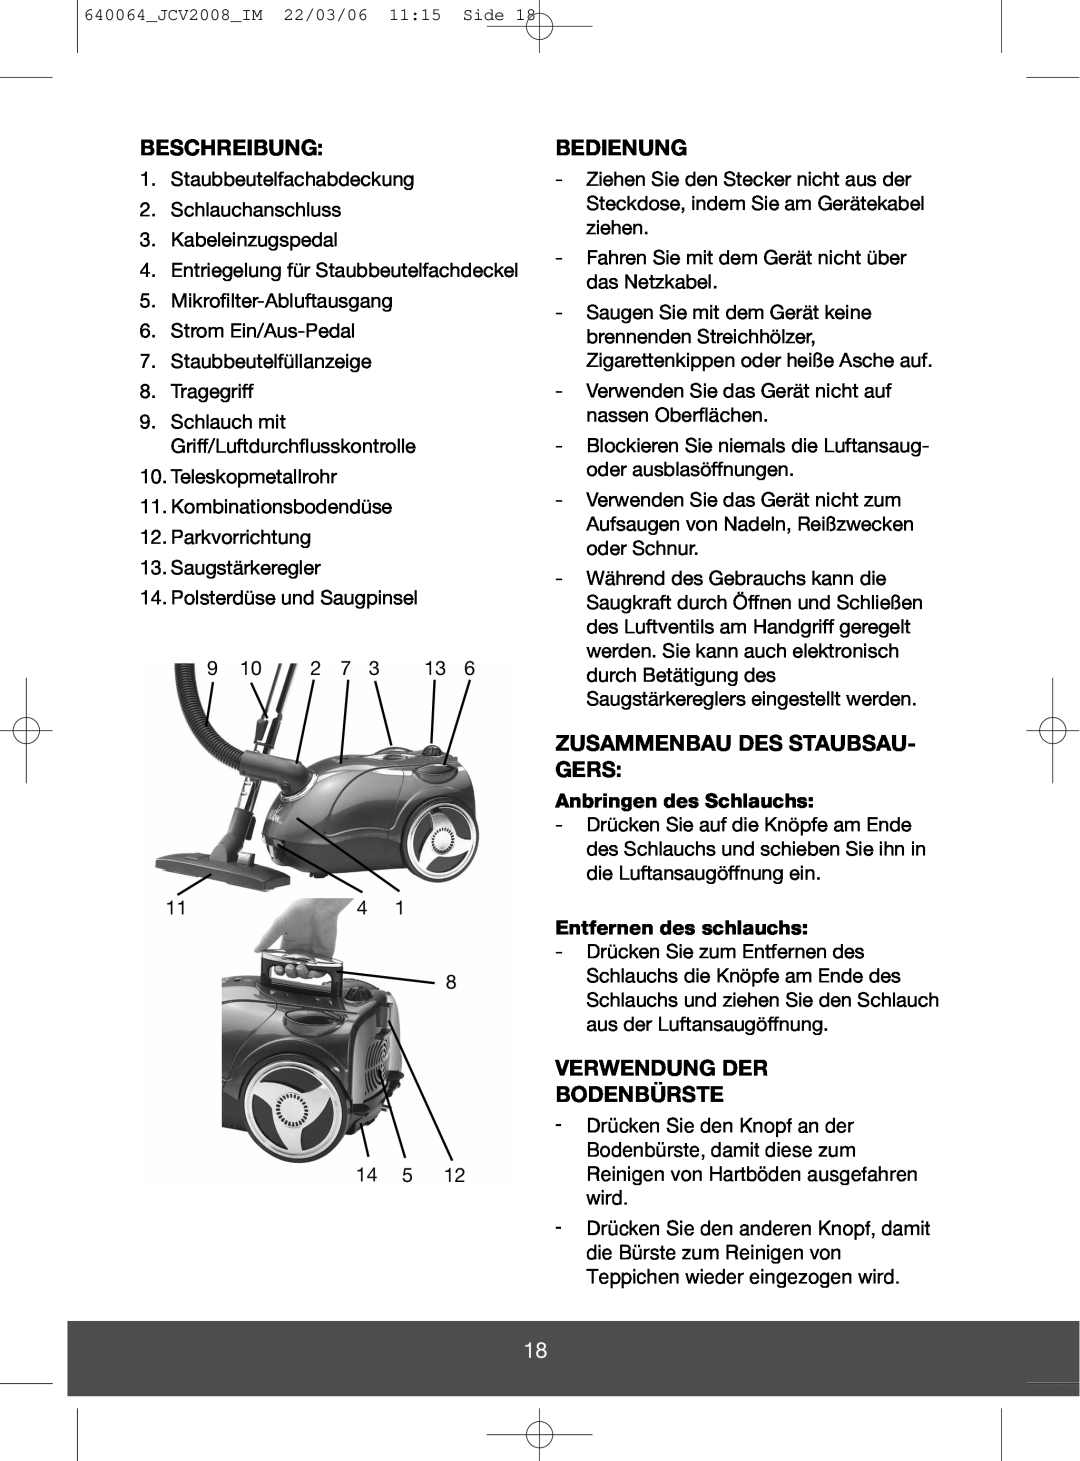 Melissa 640-123 manual Beschreibung, Bedienung, Zusammenbau Des Staubsau- Gers, Verwendung Der Bodenbürste 